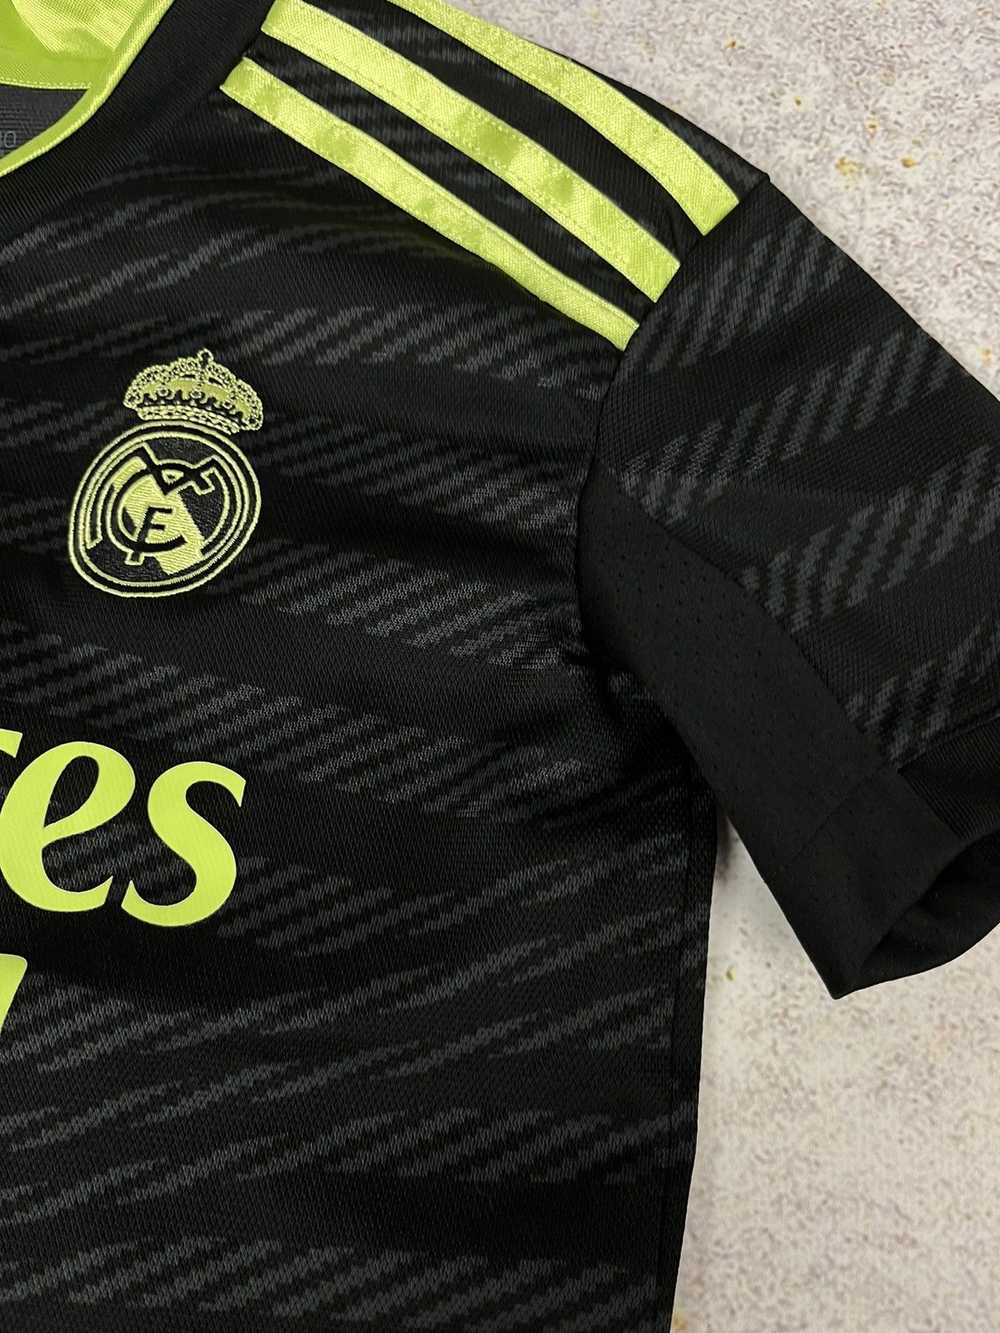 Adidas × Art of Football × Real Madrid Real Madri… - image 4